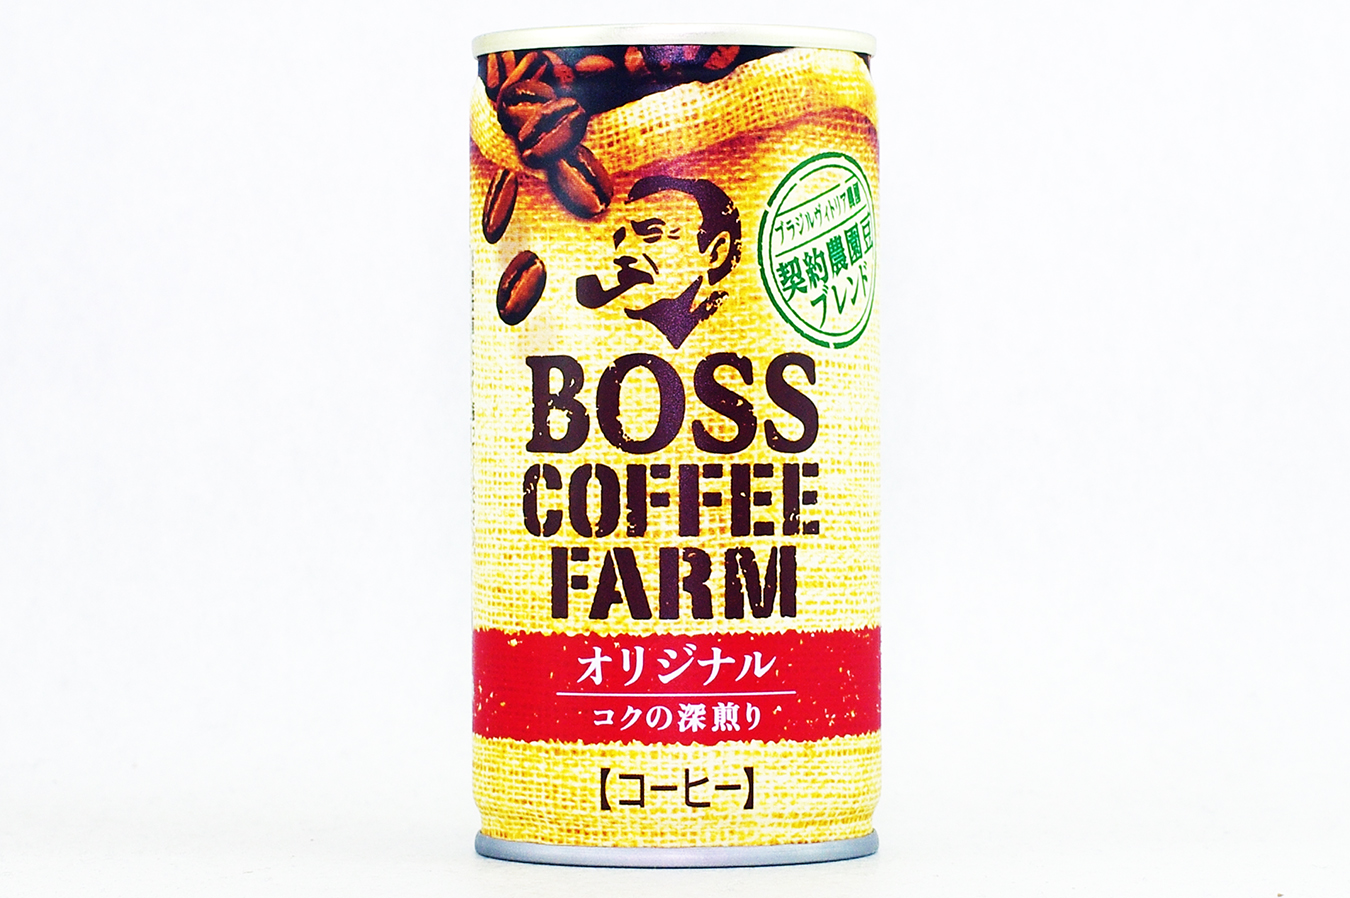 BOSS COFFEE FARM ãªãªã¸ãã«ãã¬ã³ã 2018å¹´10æ